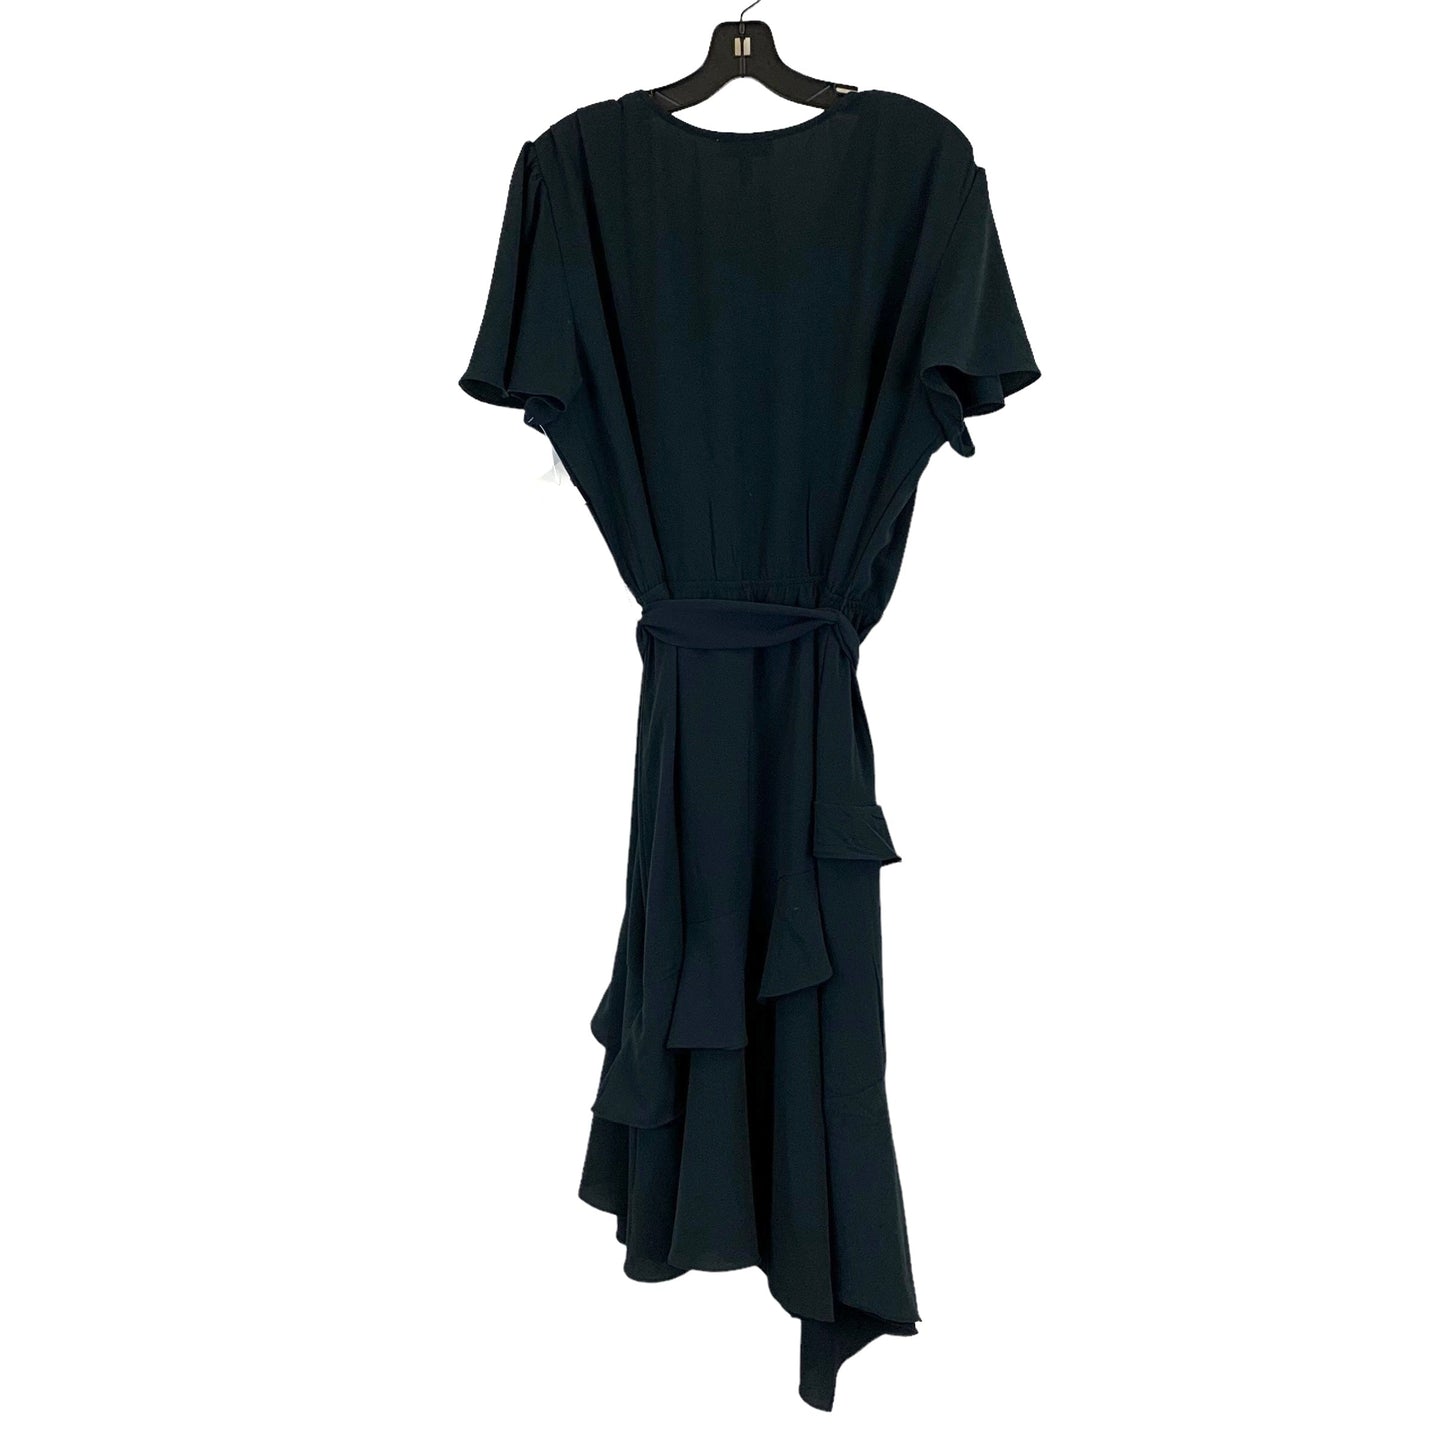 Dress Casual Midi By Sofia By Sofia Vergara  Size: Xxxl